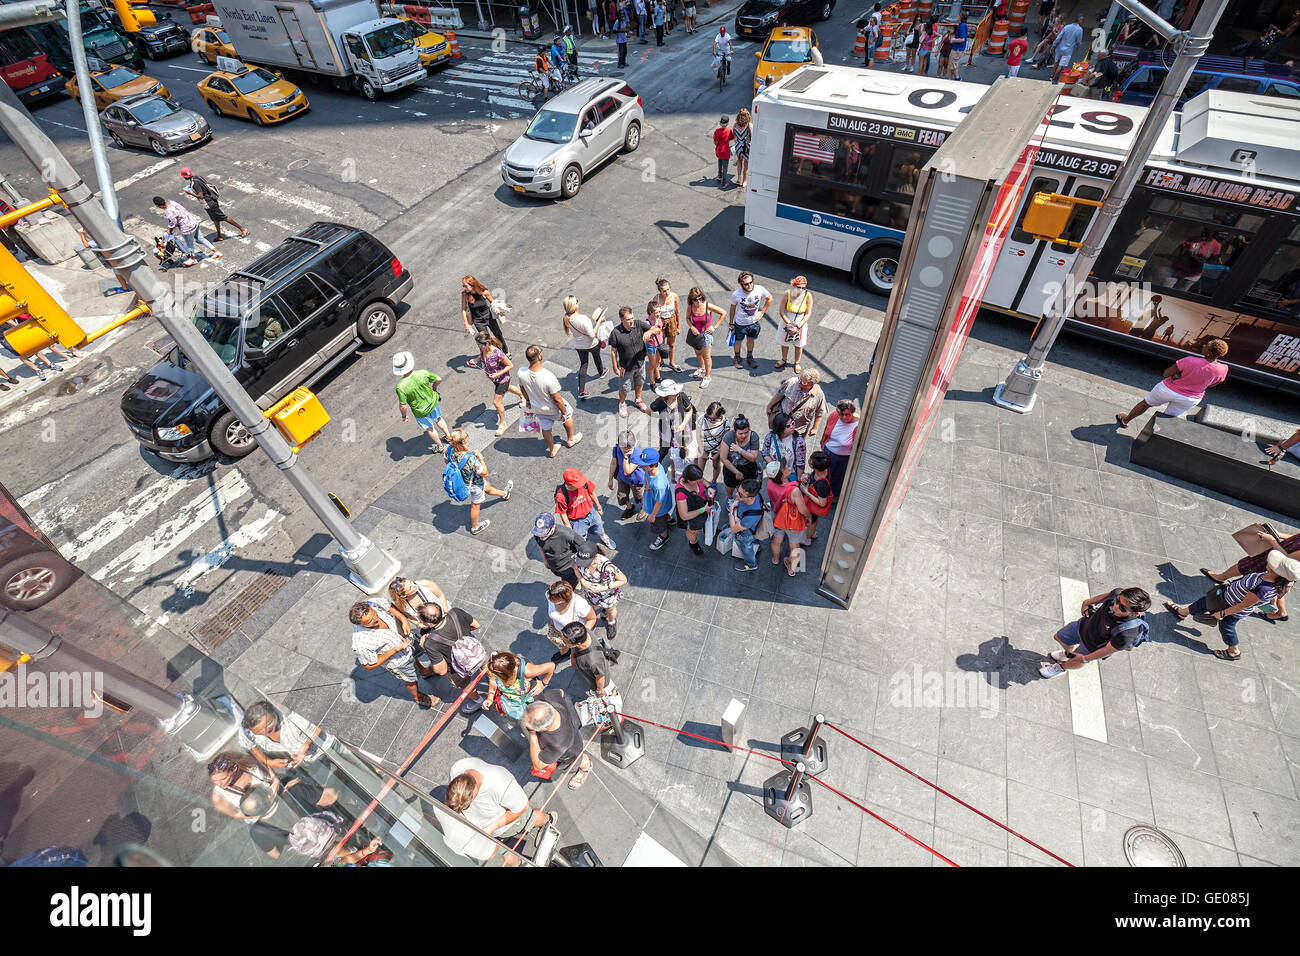 New York, USA - 17 août 2015 Grand angle : Photo de personnes sur le Times Square, appelé par beaucoup comme le cœur du monde. Banque D'Images